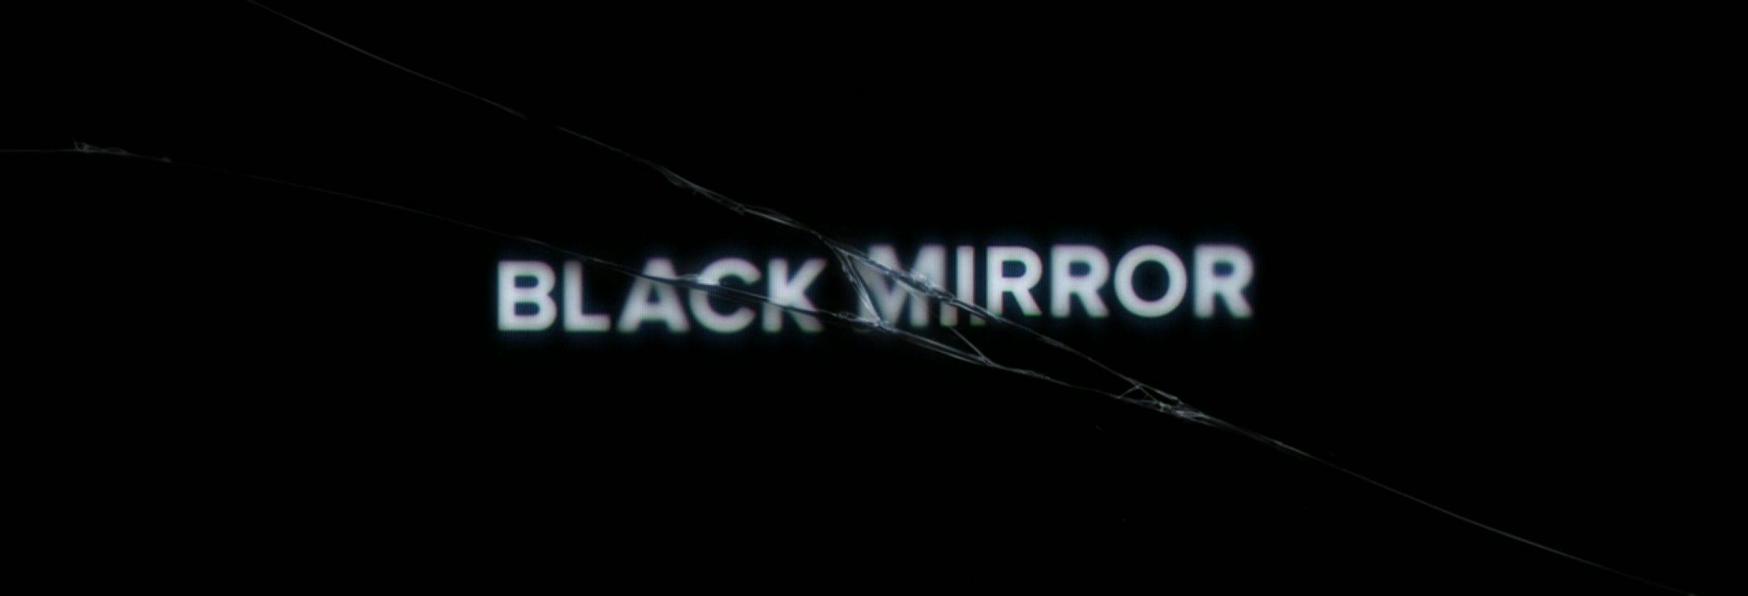 Black Mirror 6: la Data di Uscita e il Trailer Ufficiale della nuova Stagione